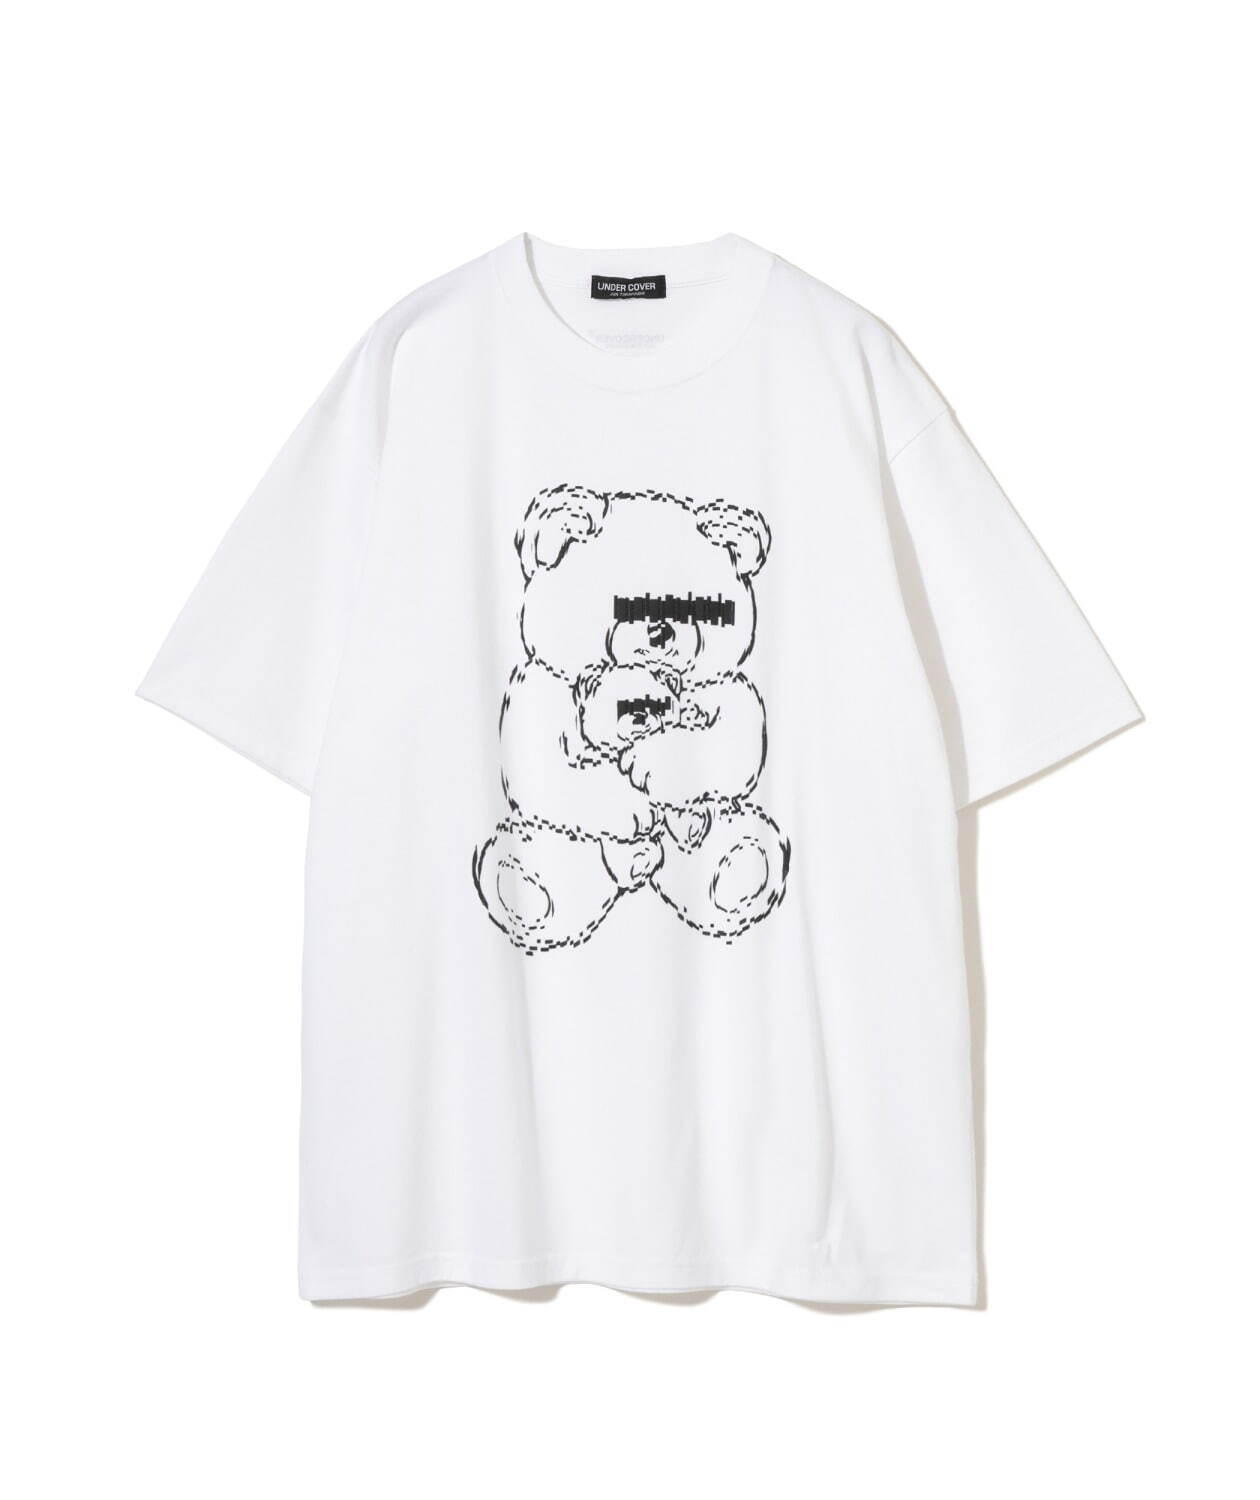 Tシャツ(ホワイト) 16,500円